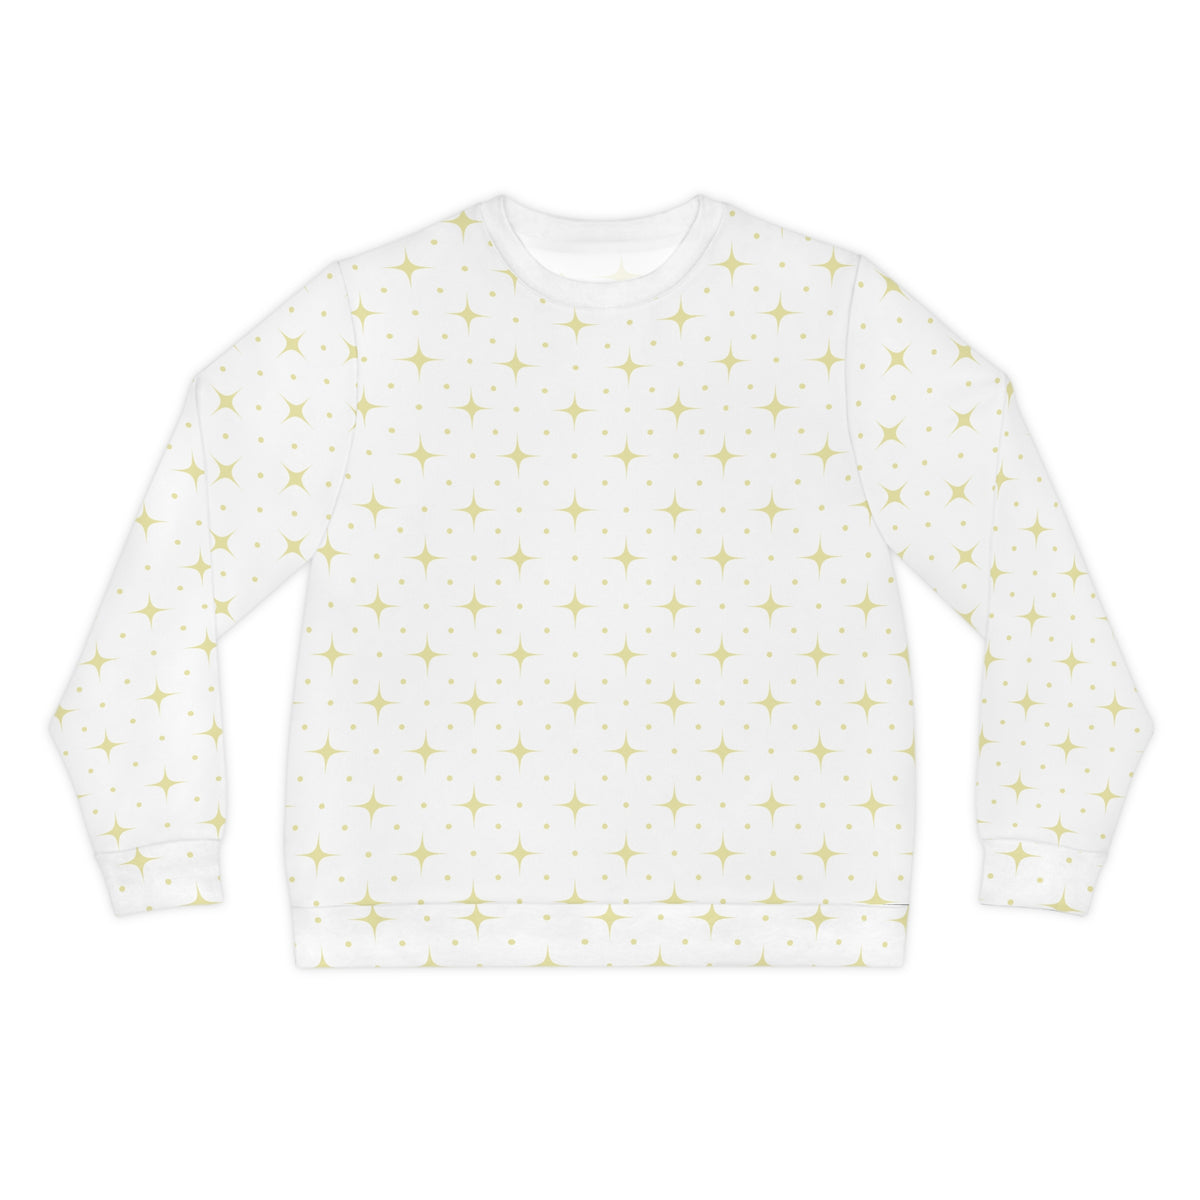 Star Lit Lightweight Sweatshirt - Gold/White, Unisex